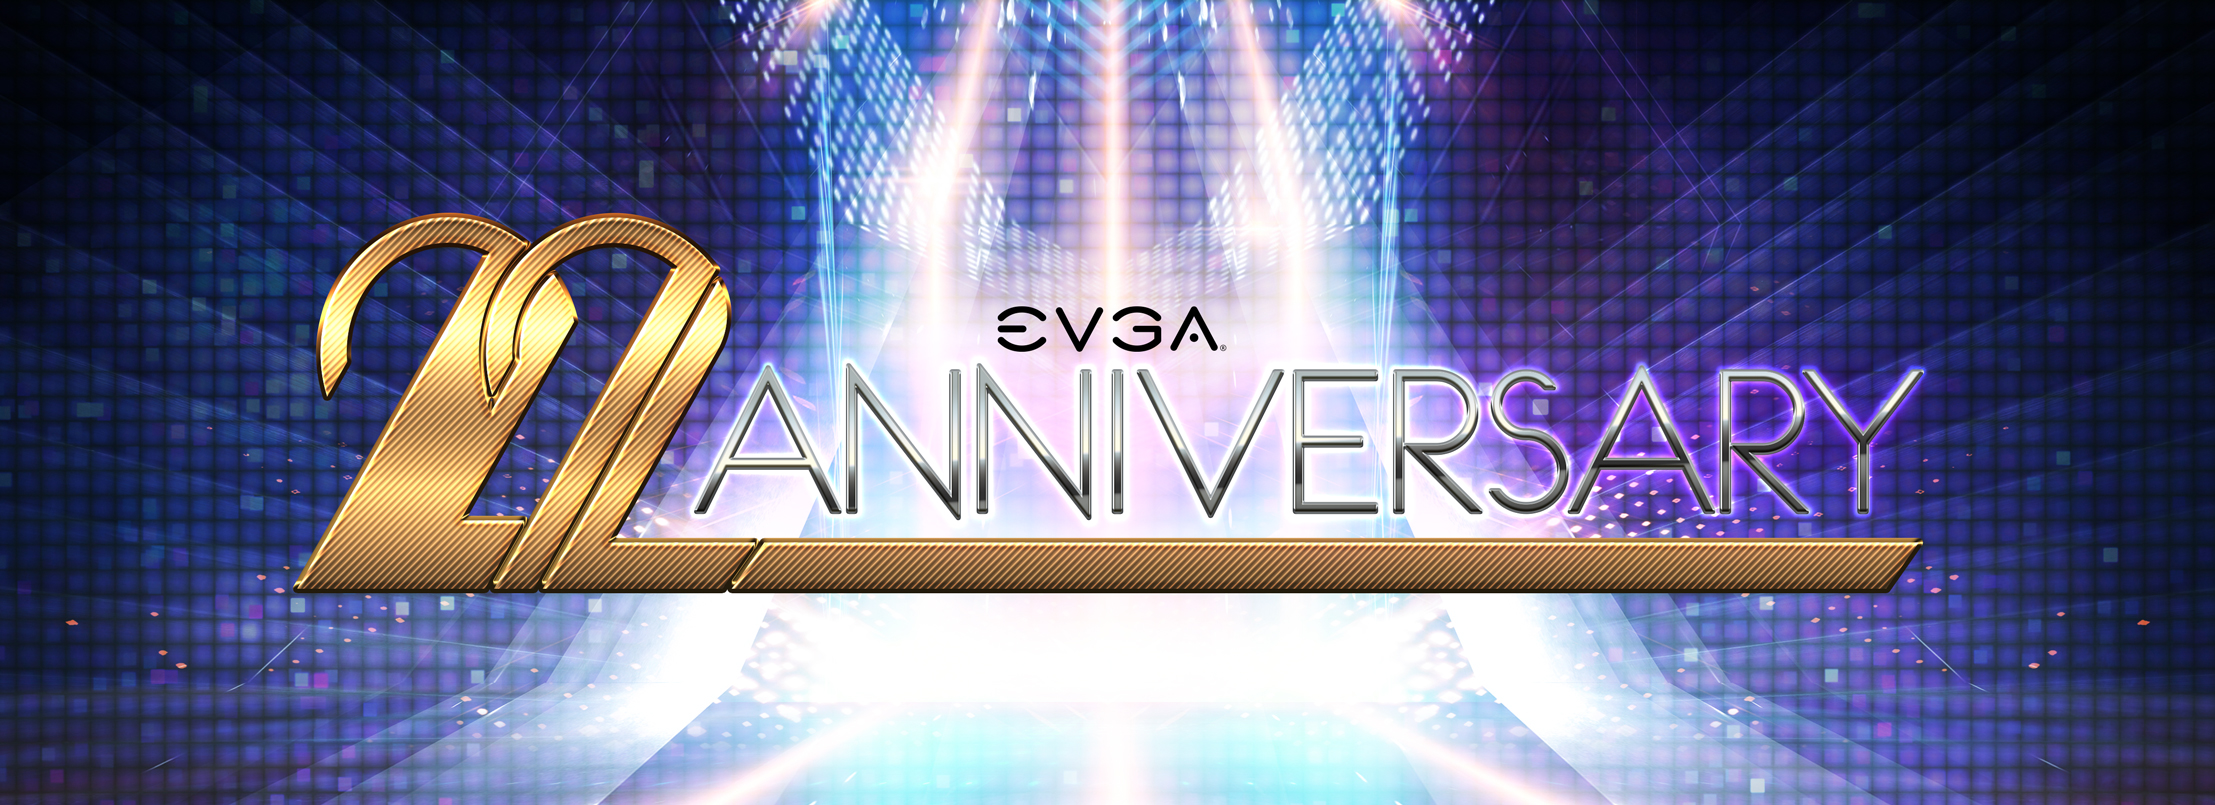 EVGA's 22nd Anniversary